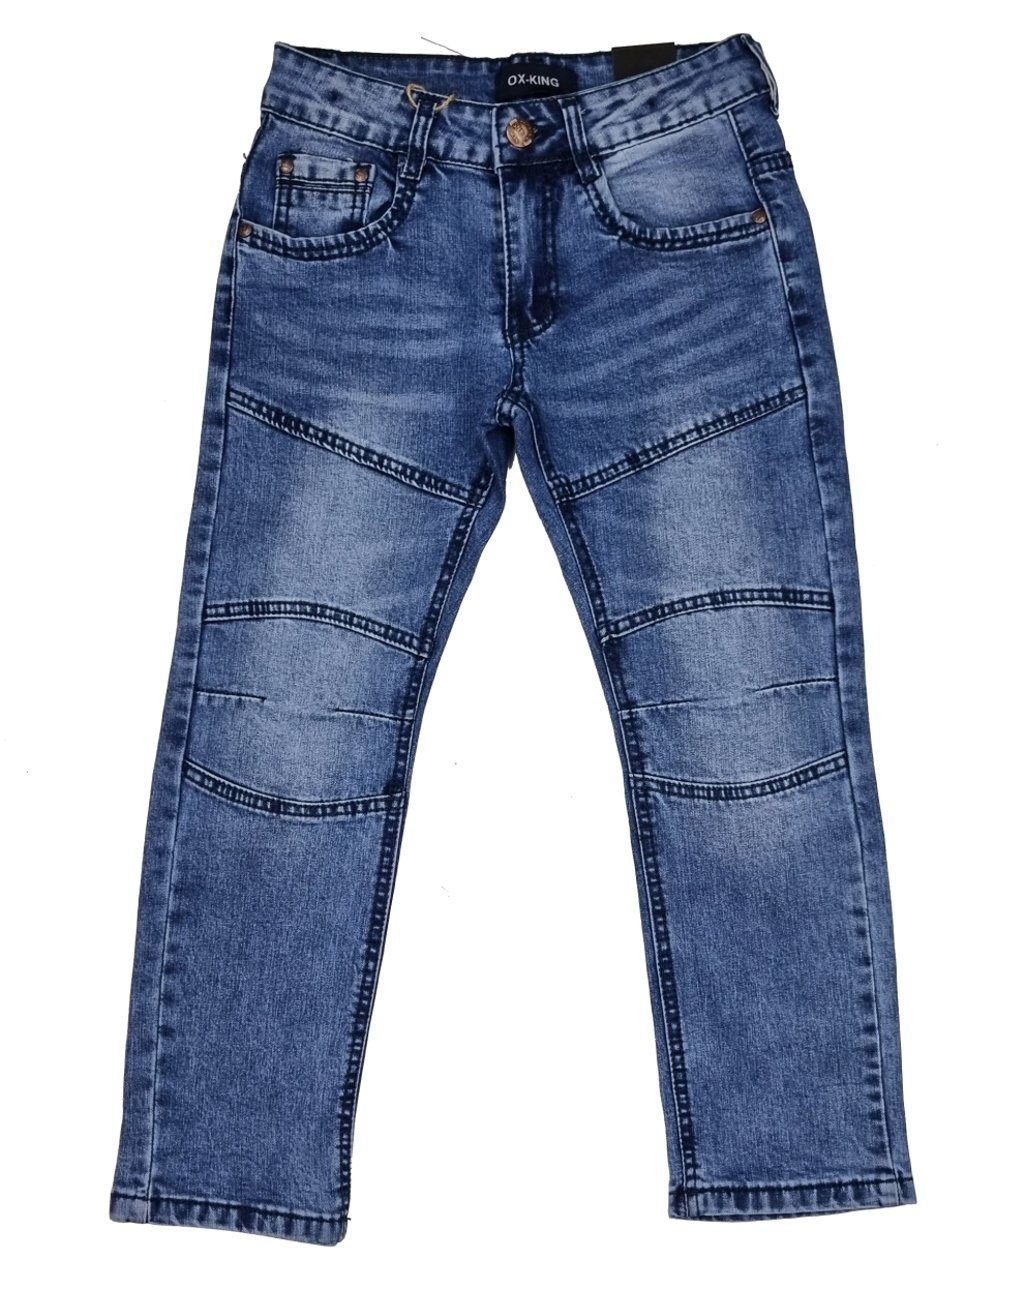 Fashion Boy Bequeme Jeans Jungen Jeans Hose Kinderhose Kinder Jeanshose, J626